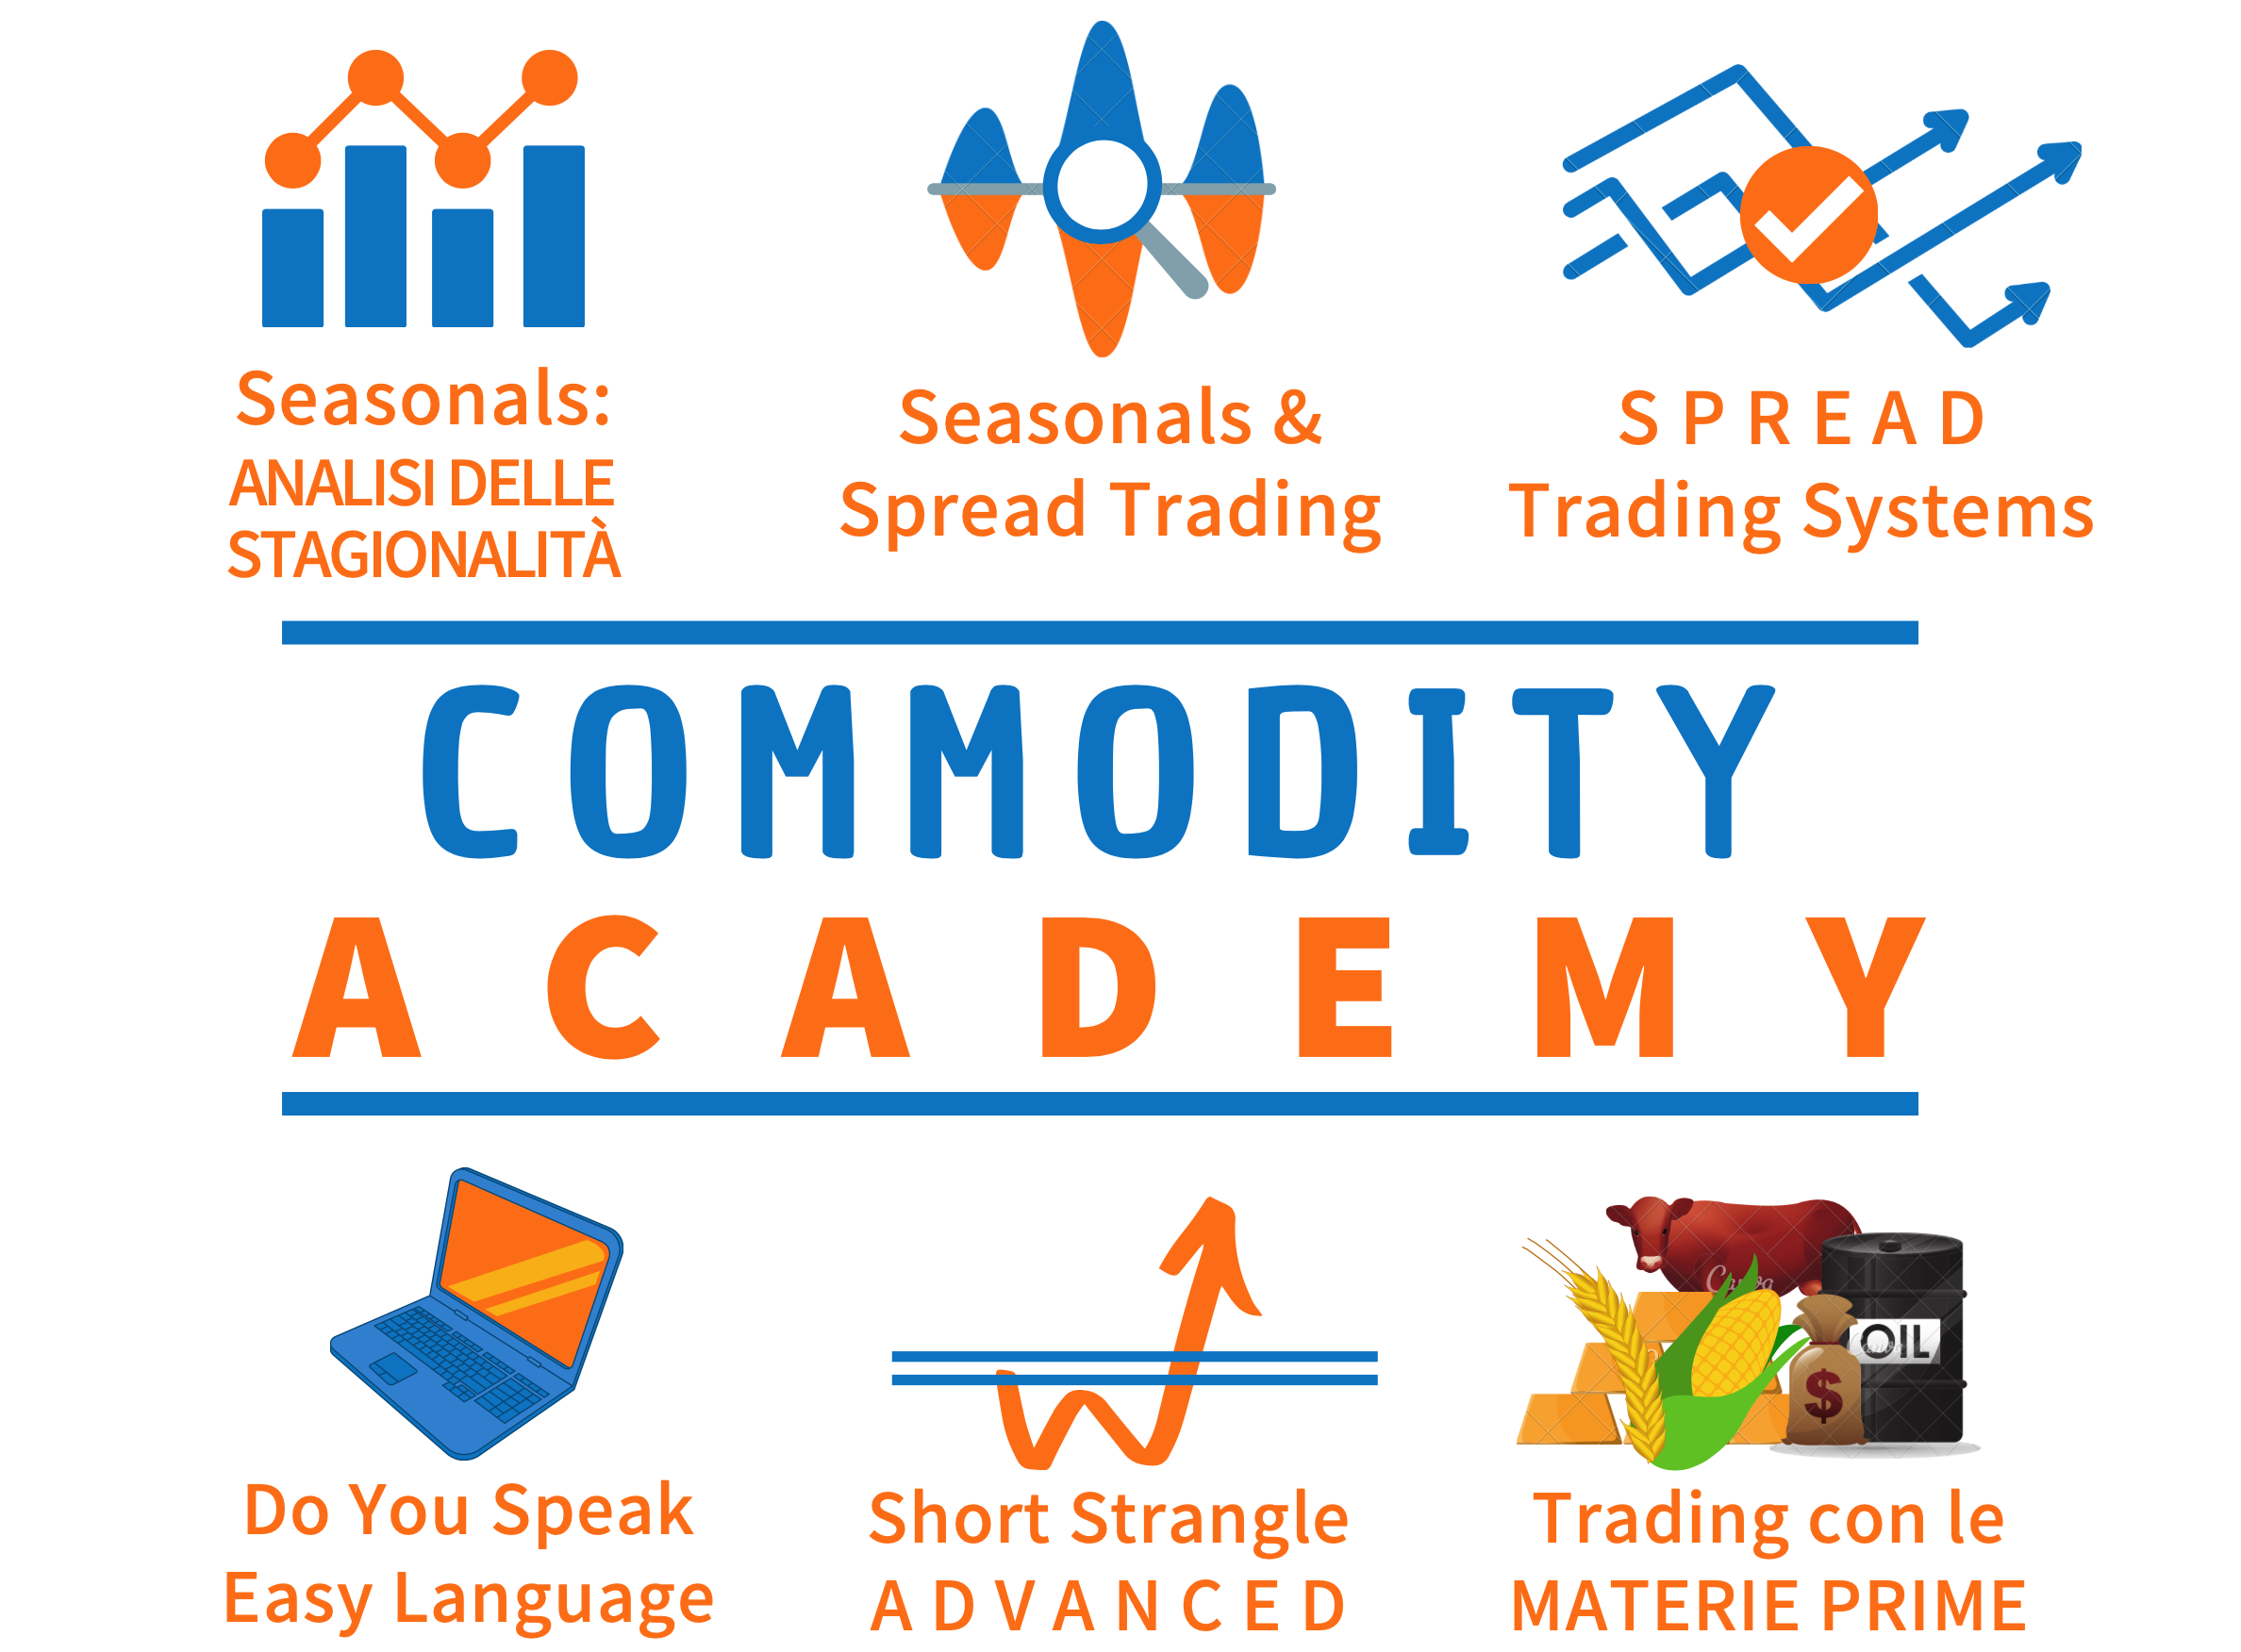 La commodities trading academy è un corso di trading incentrato sui fondamentali, le stagionalità, i trading system sulle commodities e sui grafici spread